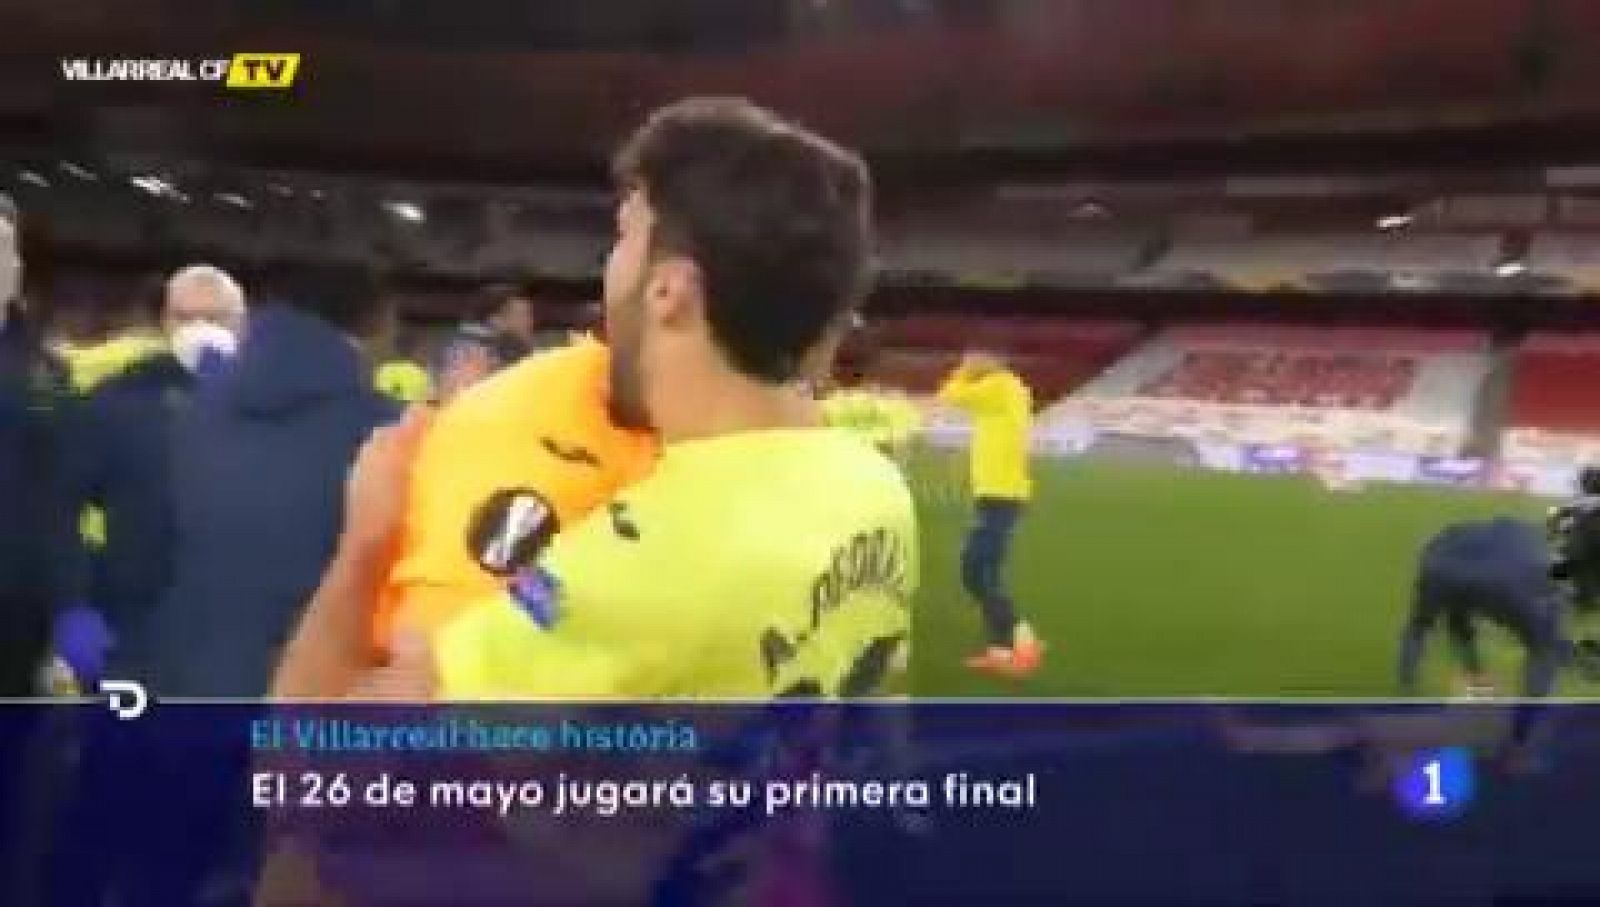 La celebración del Villarreal tras meterse en su primera final